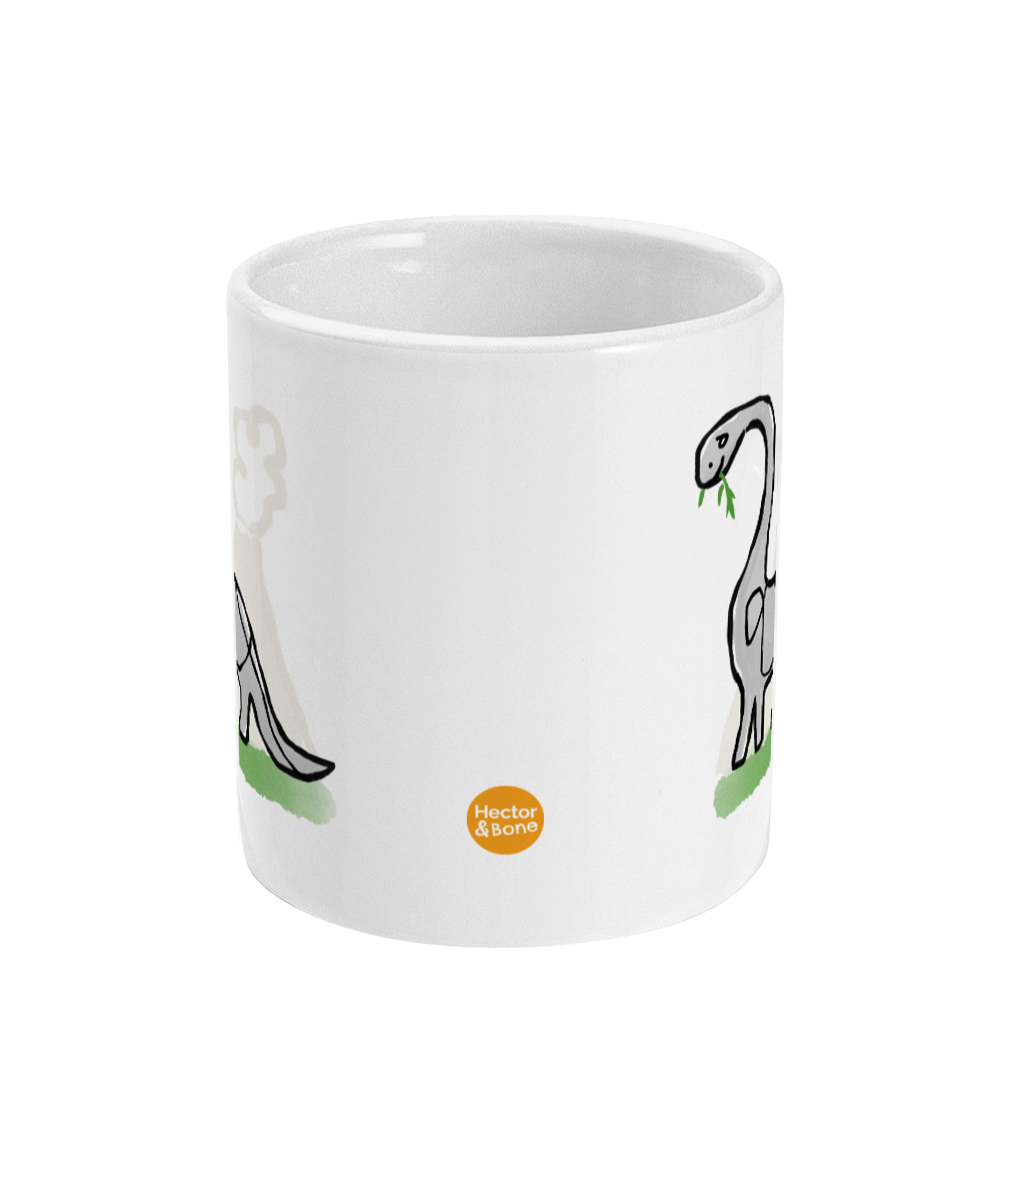 Derek Dinosaur design coffee mug by Hector and Bone Front View